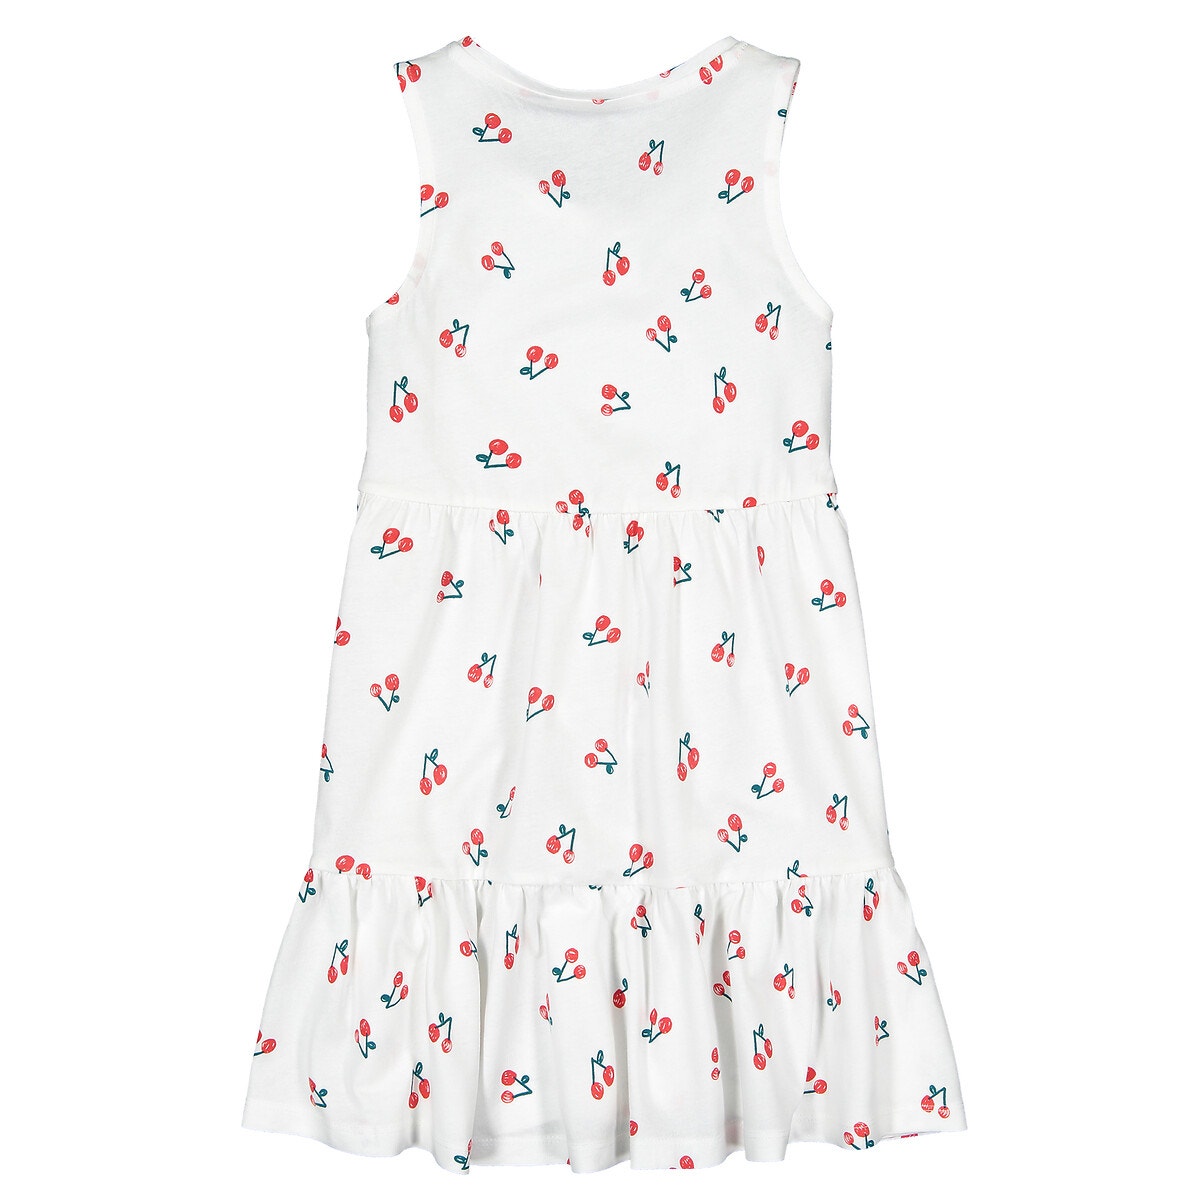 Αμάνικο φόρεμα με μοτίβο κεράσια, 3-12 ετών